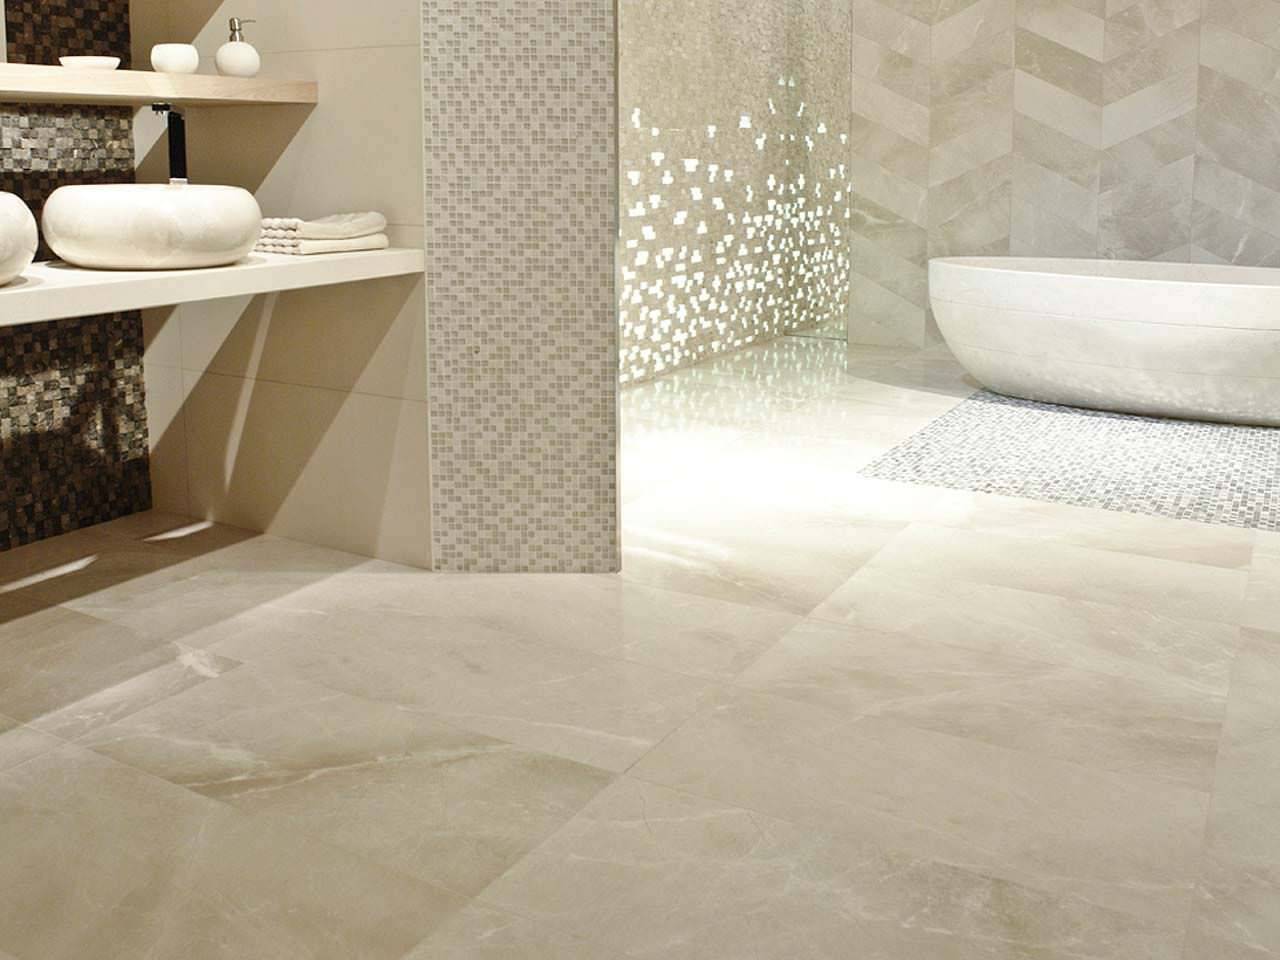 Chỉ với một chút xà phòng lỏng nhẹ nhàng, vải mềm và nước là tất cả những gì bạn cần để nền đá cẩm thạch trong nhà tắm luôn bóng đẹp trong vài thập kỷ rồi